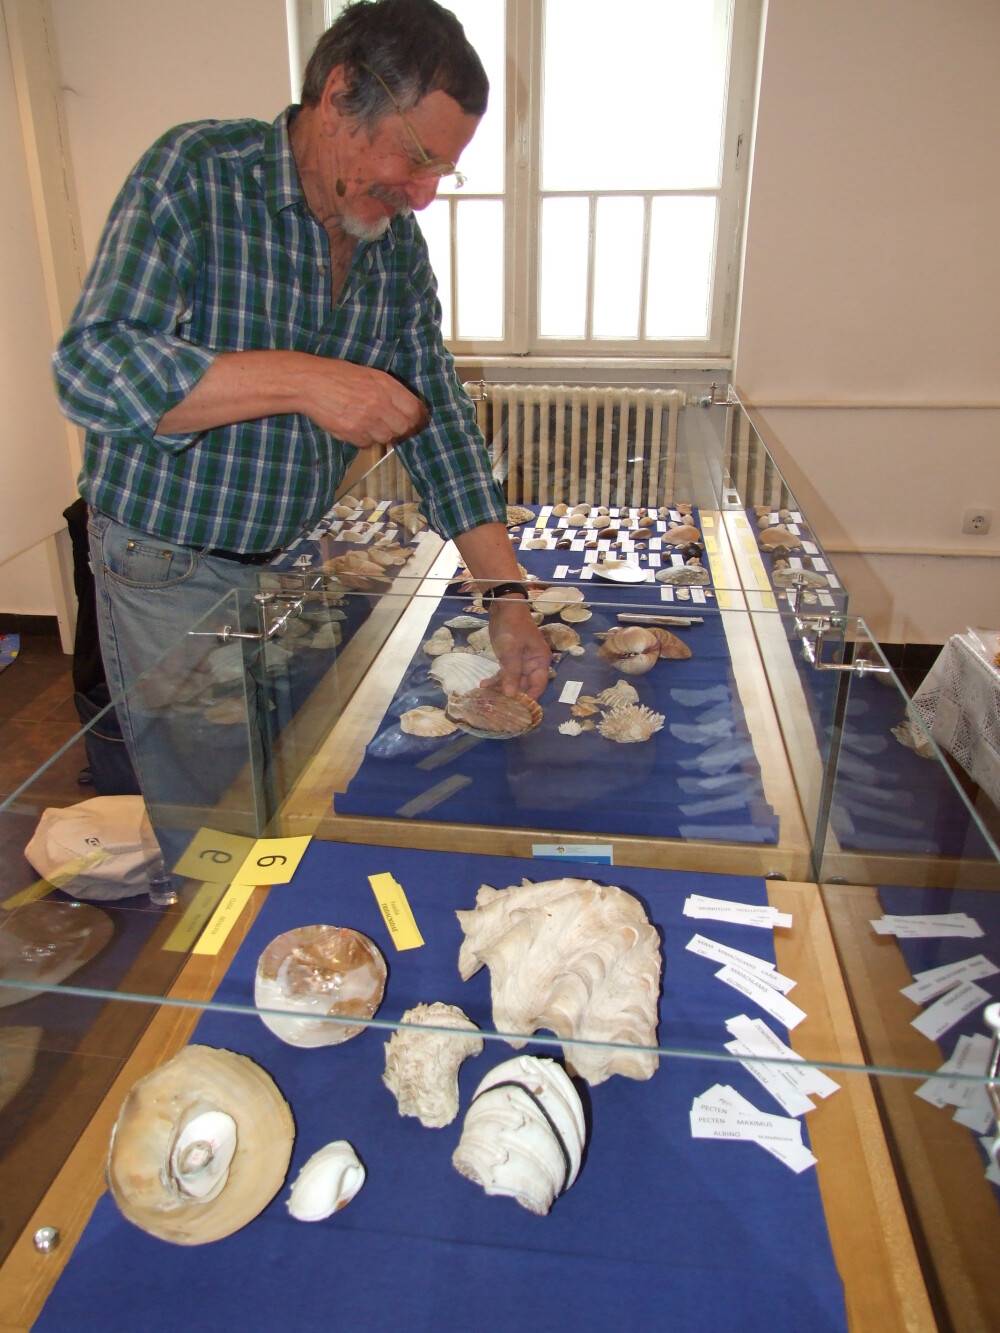 Expozitie rara la Arad. Peste 600 de exponate din lumea molustelor pot fi studiate la muzeu - Imaginea 1